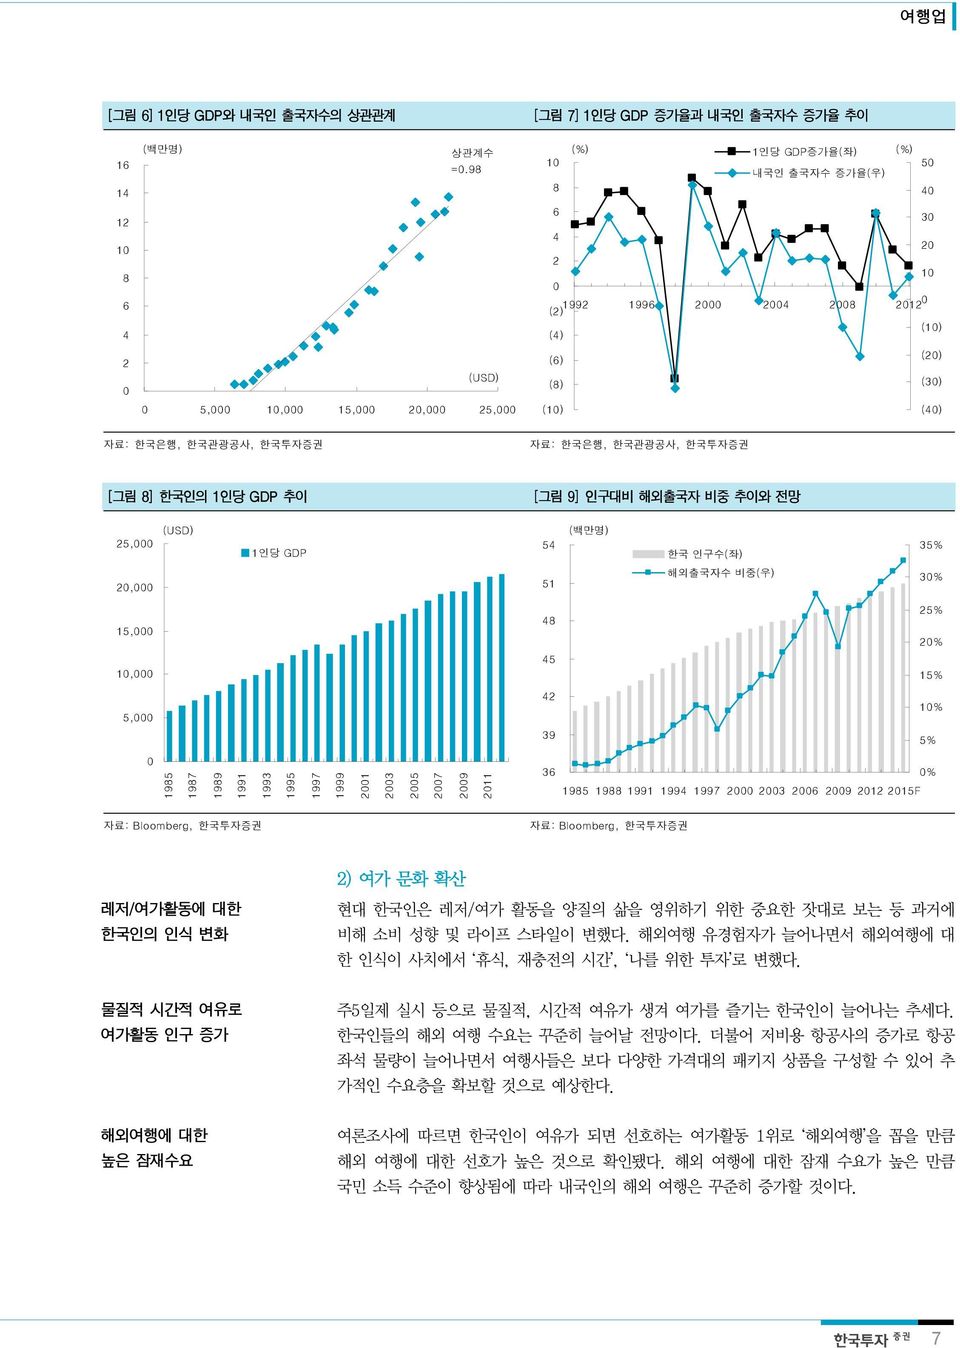 한국인의 1인당 GDP 추이 [그림 9] 인구대비 해외출국자 비중 추이와 전망 25, (USD) 1인당 GDP 54 (백만명) 한국 인구수(좌) 35% 2, 51 해외출국자수 비중(우) 3% 15, 1, 48 45 25% 2% 15% 5, 42 39 1% 5% 1985 1987 1989 1991 1993 1995 1997 1999 21 23 25 27